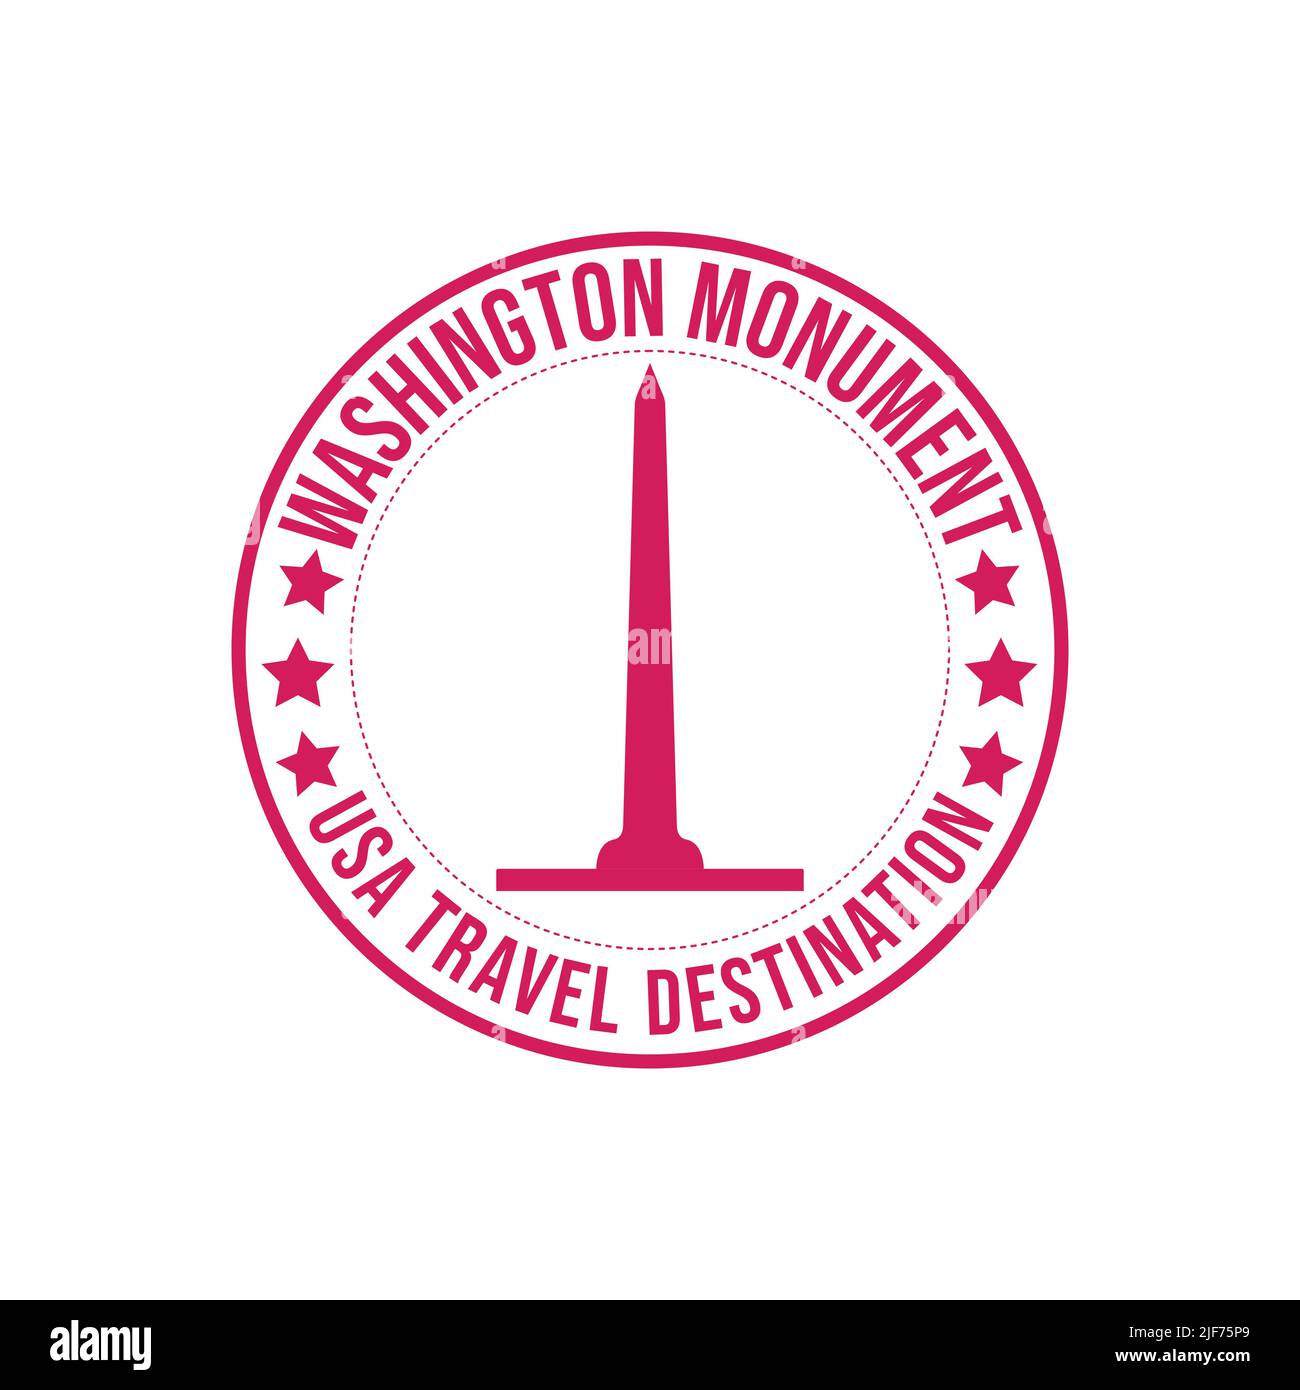 Emblem Gummistempel mit dem Text Washington Monument travel Destination in der Marke geschrieben. Amerika Denkmal historische Architektur Reise des Stock Vektor